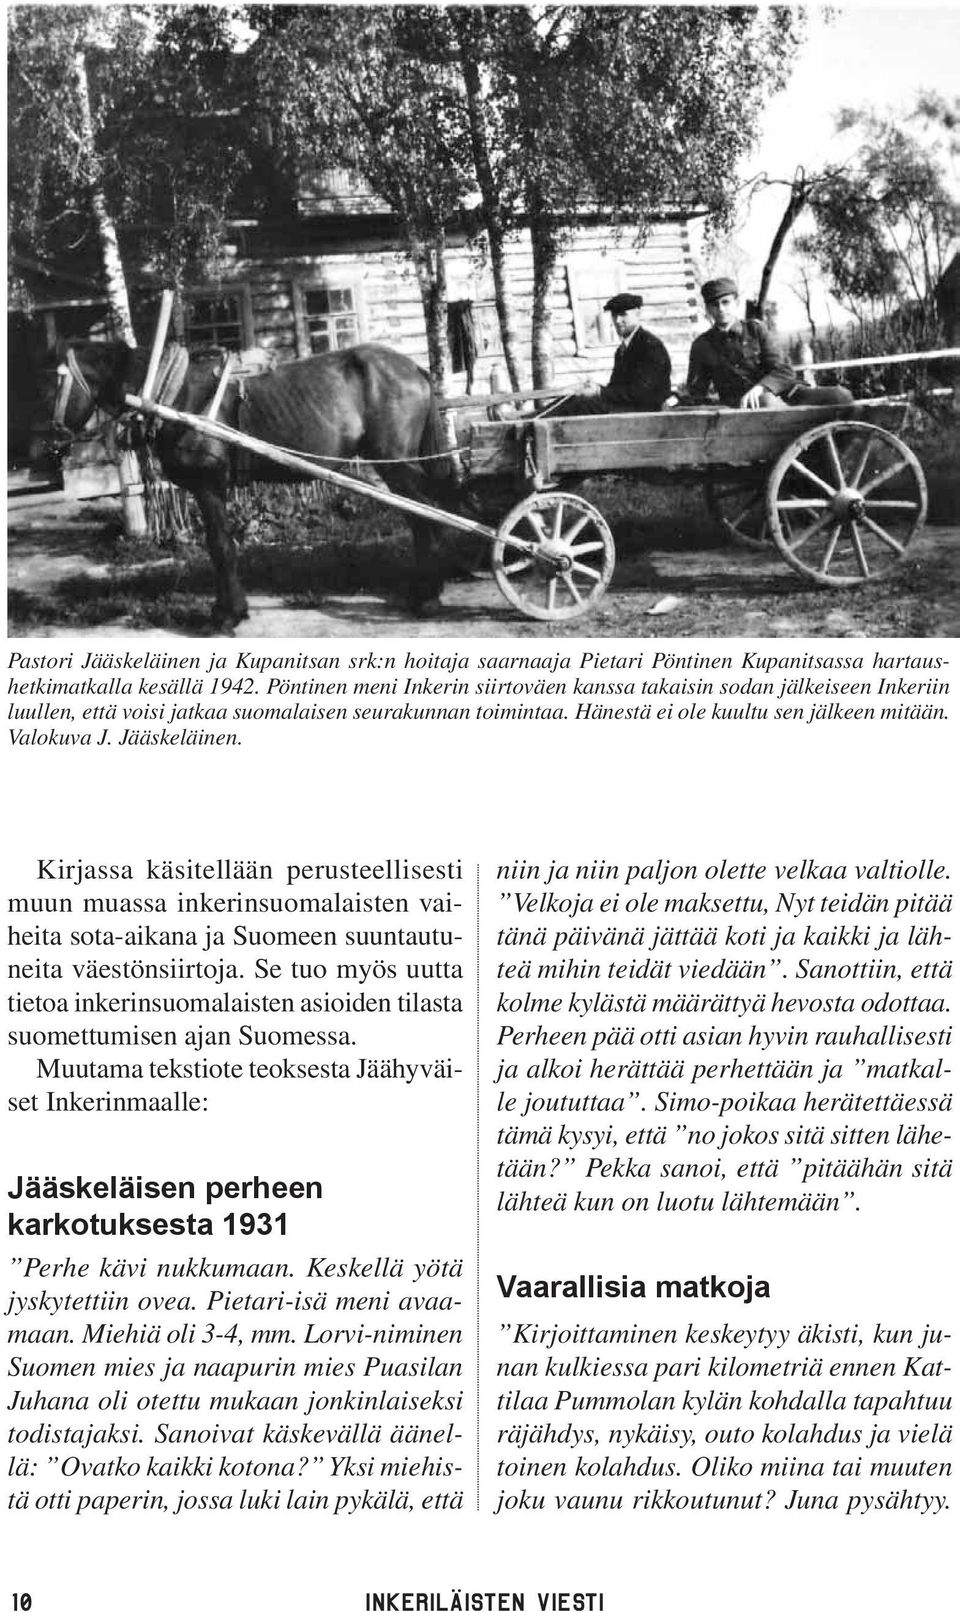 Jääskeläinen. Kirjassa käsitellään perusteellisesti muun muassa inkerinsuomalaisten vaiheita sota-aikana ja Suomeen suuntautuneita väestönsiirtoja.